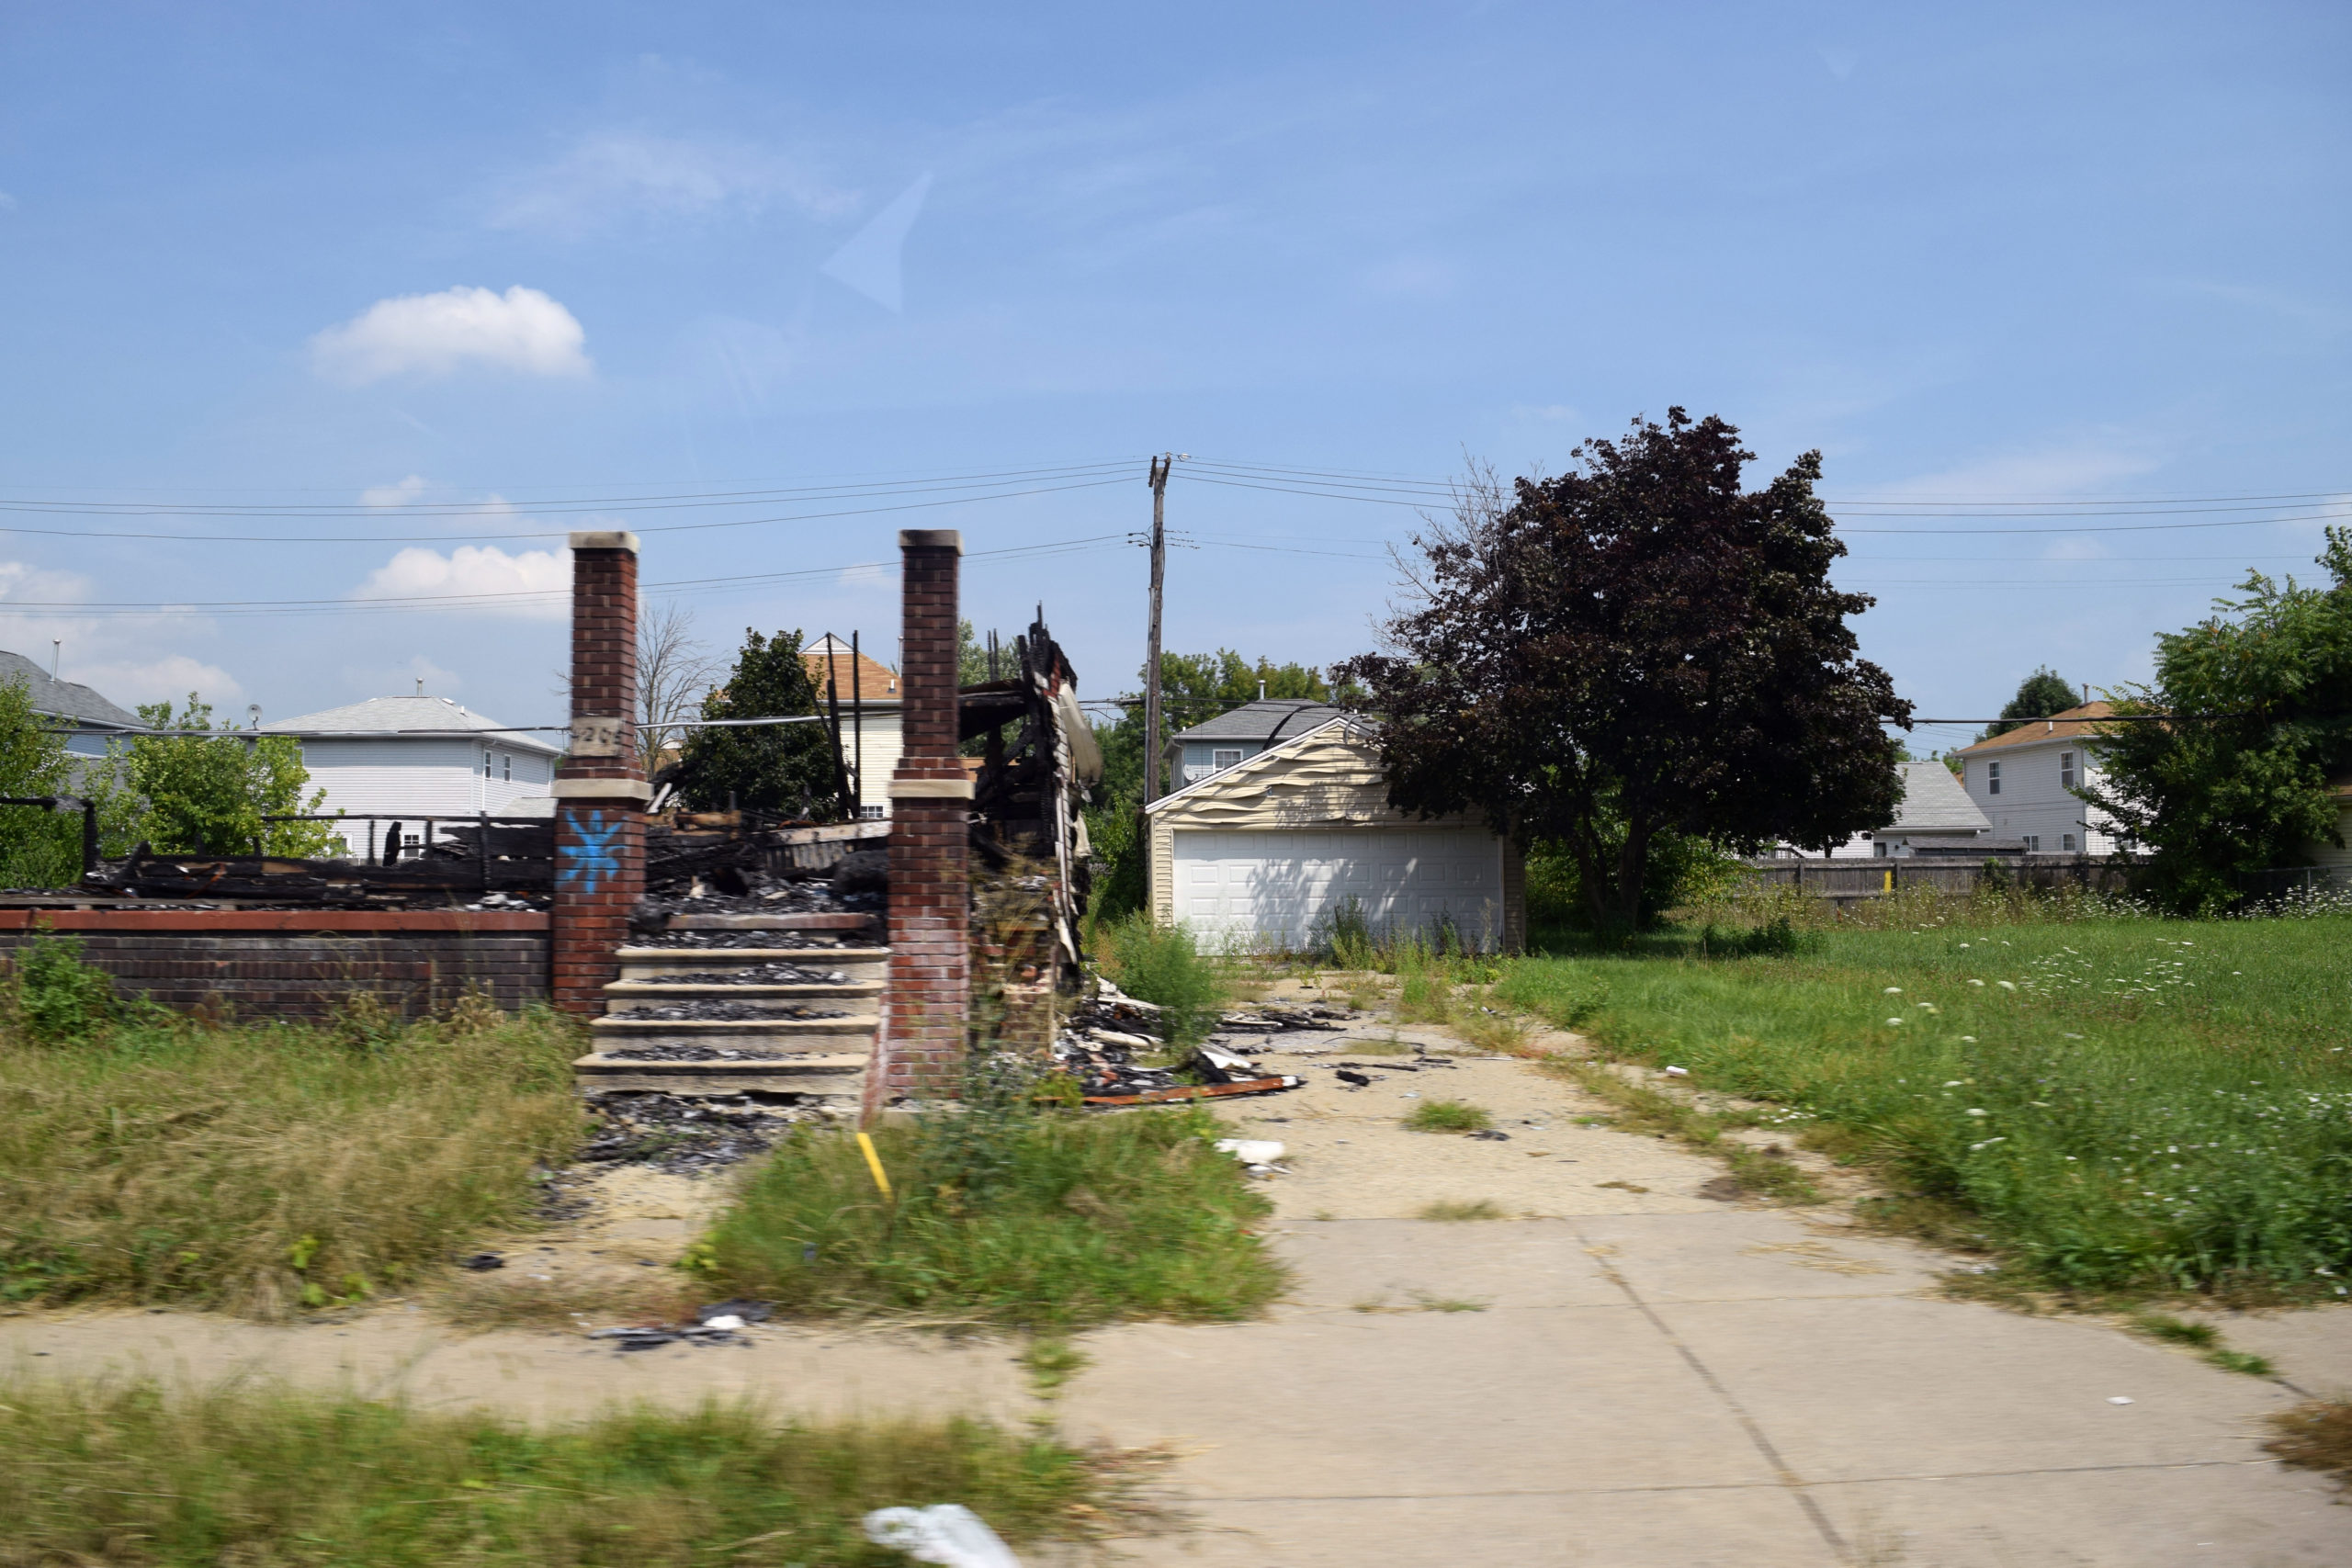 Burned Out Home-Detroit, MI-Credit Luke Telander for the Center for Community Progress-2014